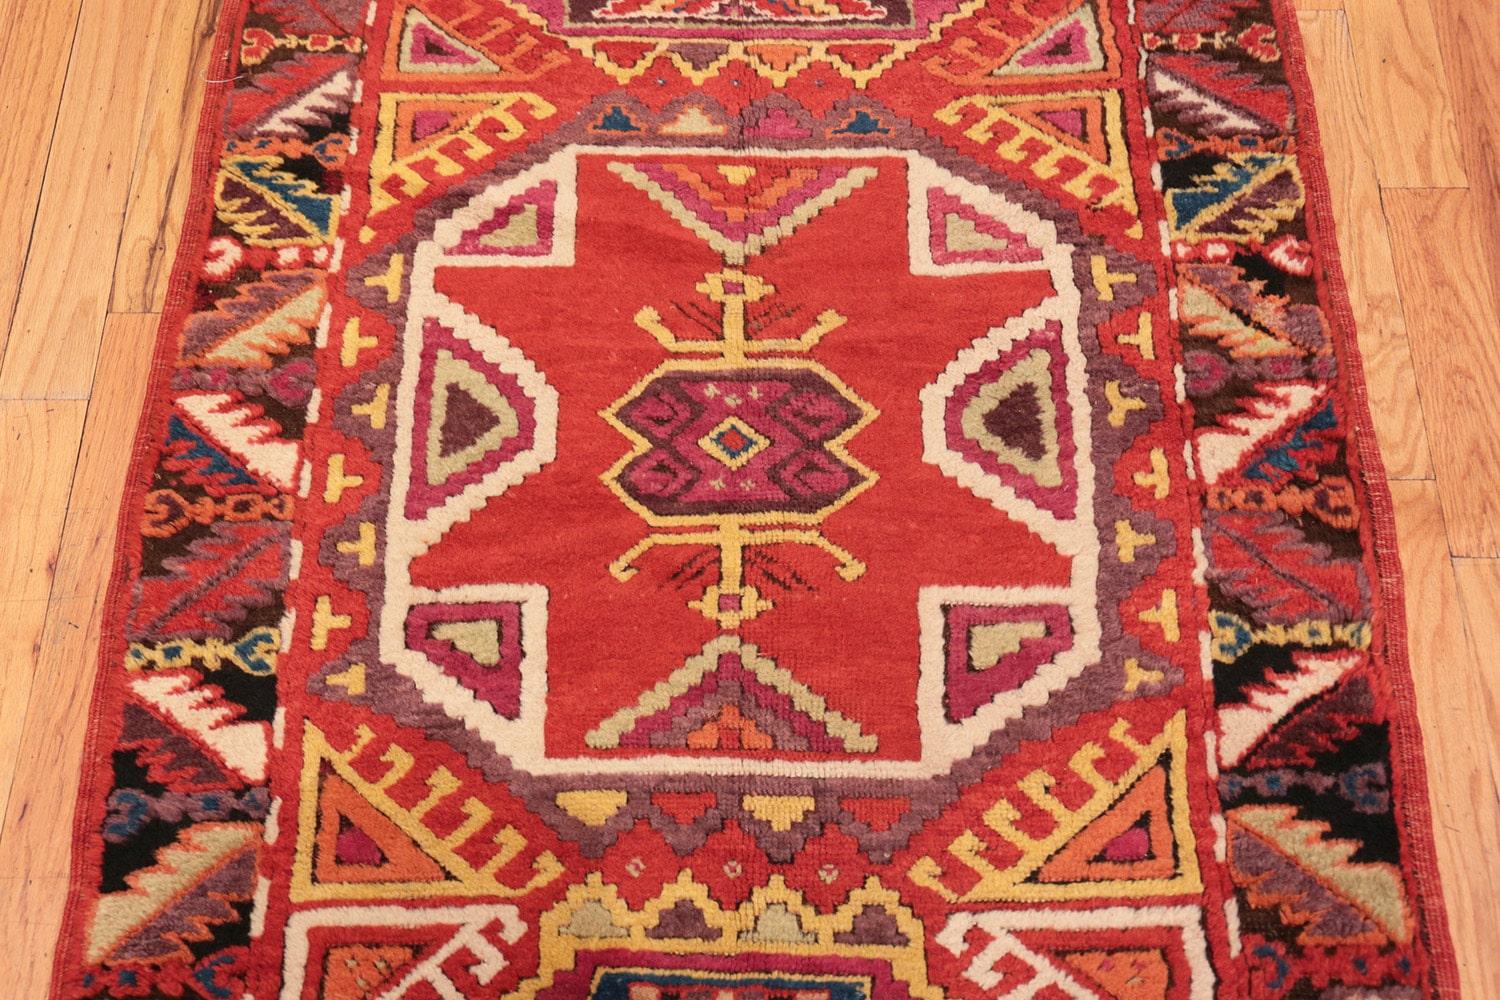 3 ft wide runner rug